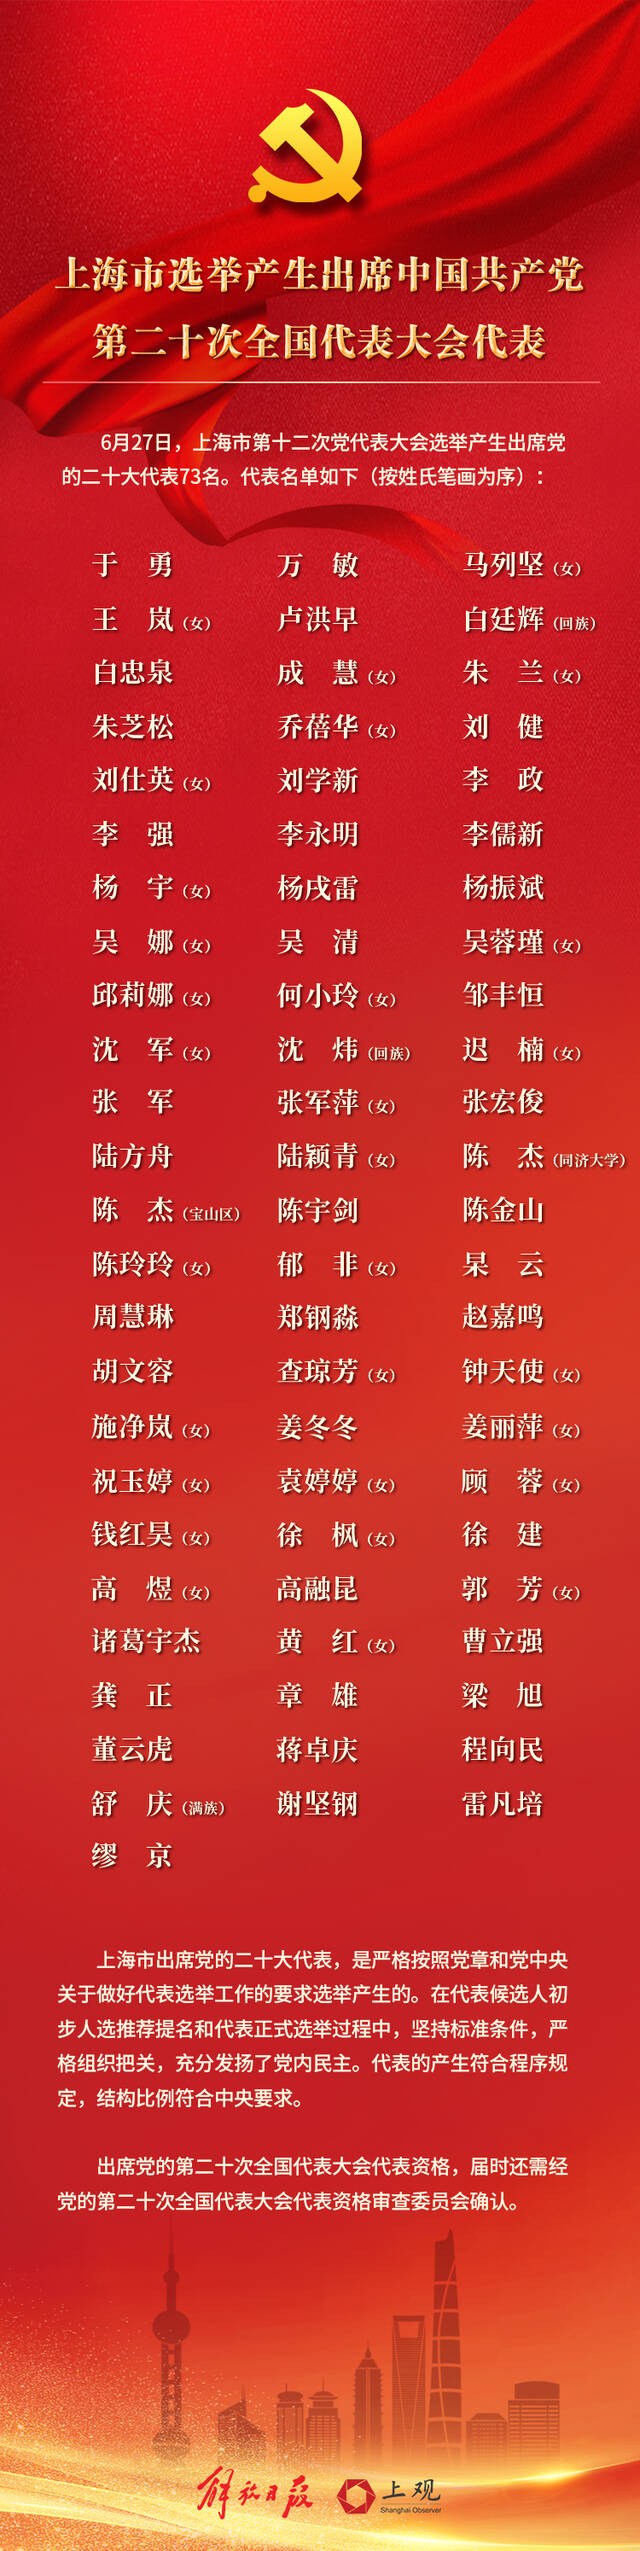 上海市选举产生出席中国共产党第二十次全国代表大会代表